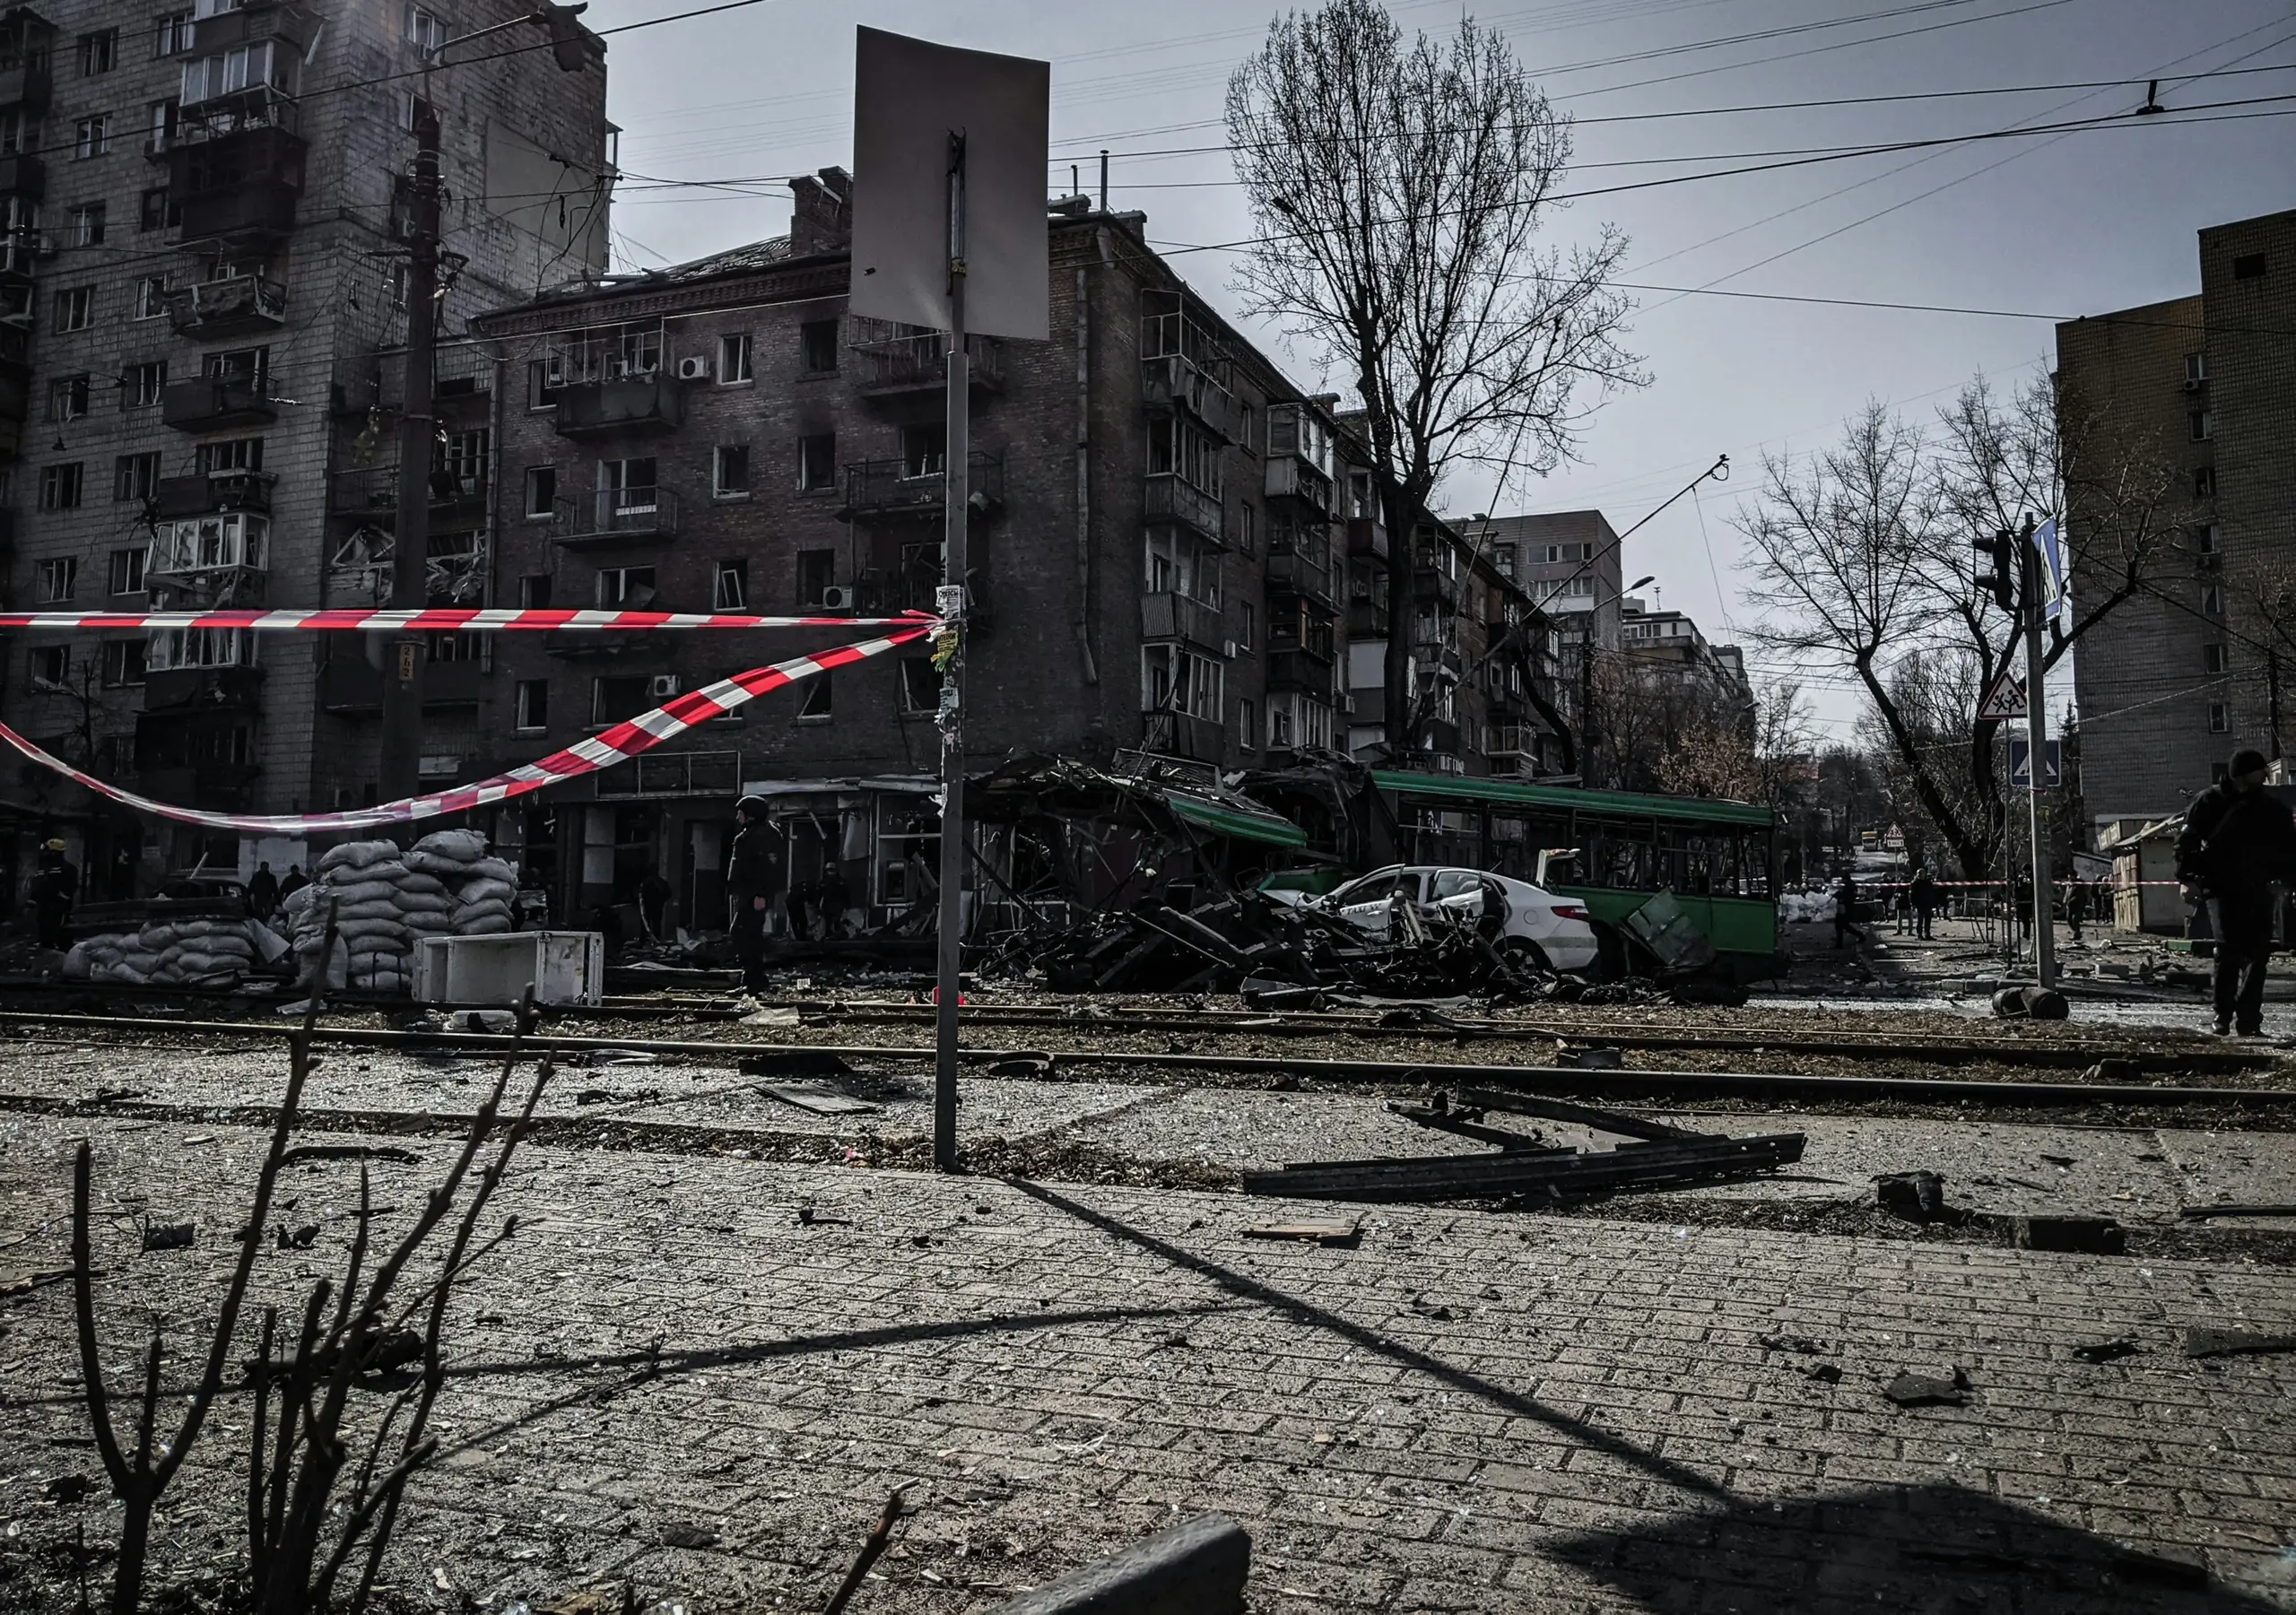 Bild von der Zerstörung in der Ukraine